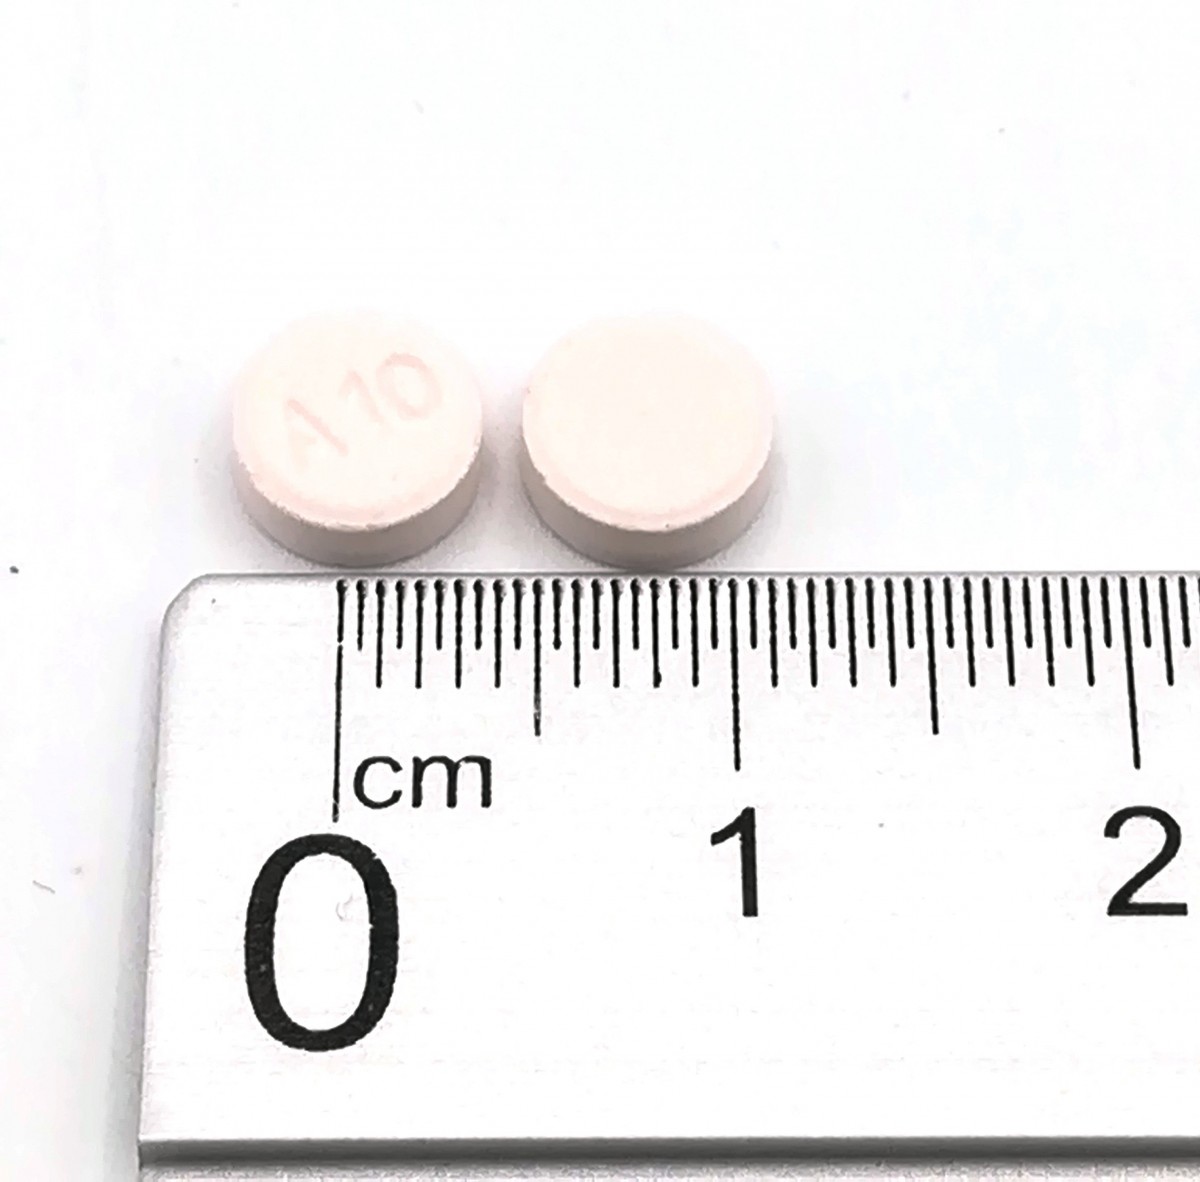 ARIPIPRAZOL NORMON 10 MG COMPRIMIDOS BUCODISPERSABLES EFG , 28 comprimidos fotografía de la forma farmacéutica.